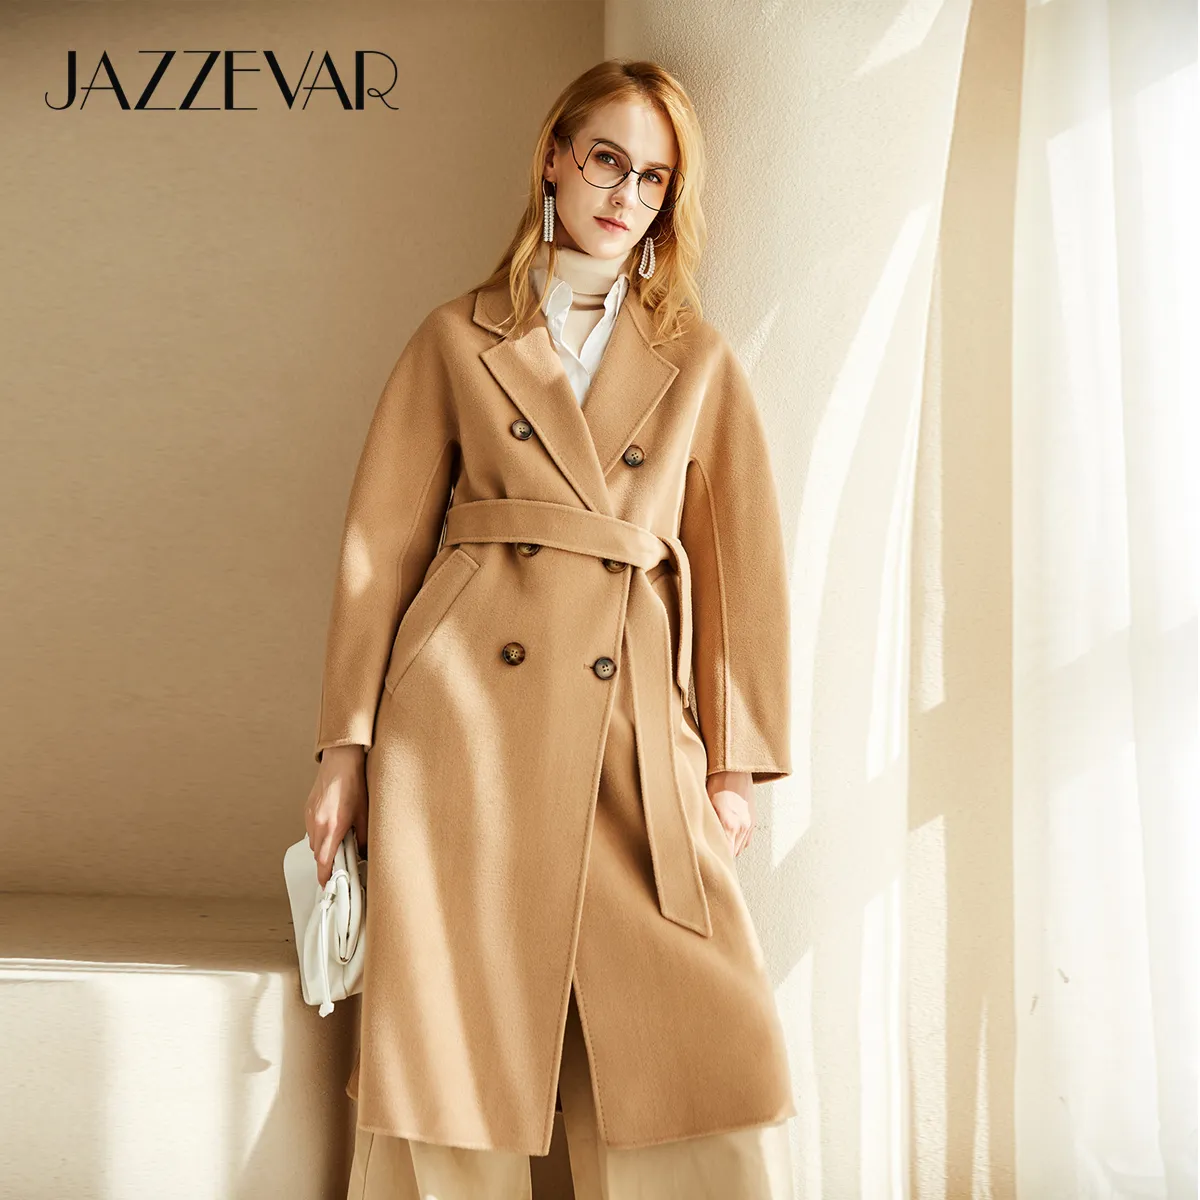 Jazzevar atumn kış yeni varış kadın el-dikili kruvaze ceket yüksek kaliteli çift yüzlü yün giyim lady 200923